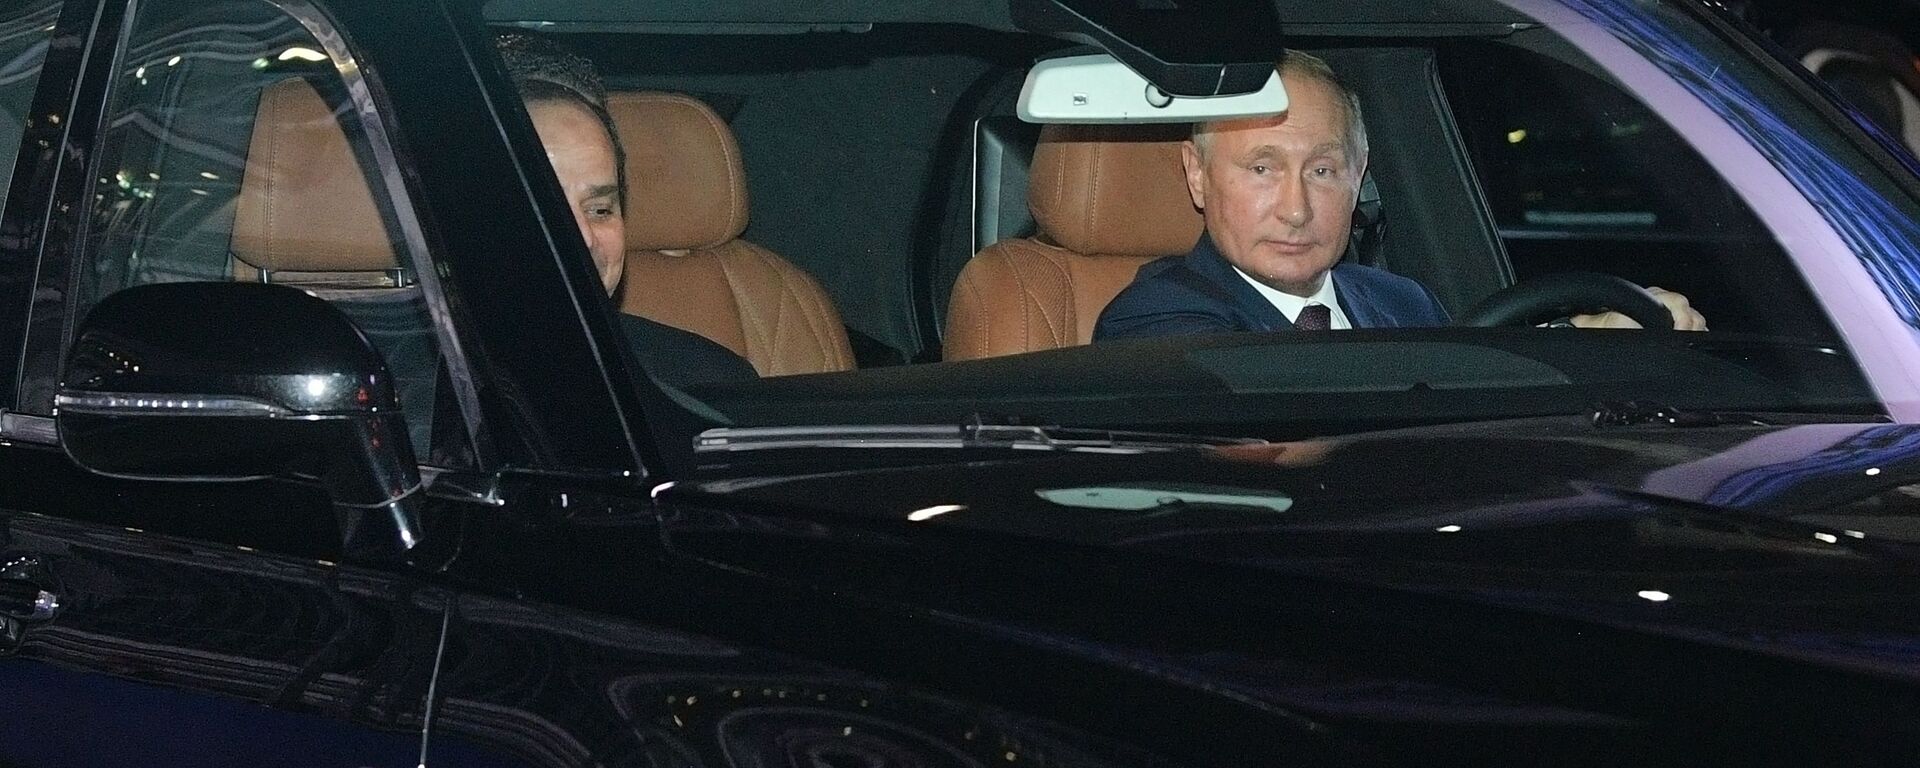 Руски председник Владимир Путин у својој лимузини - Sputnik Србија, 1920, 24.11.2019